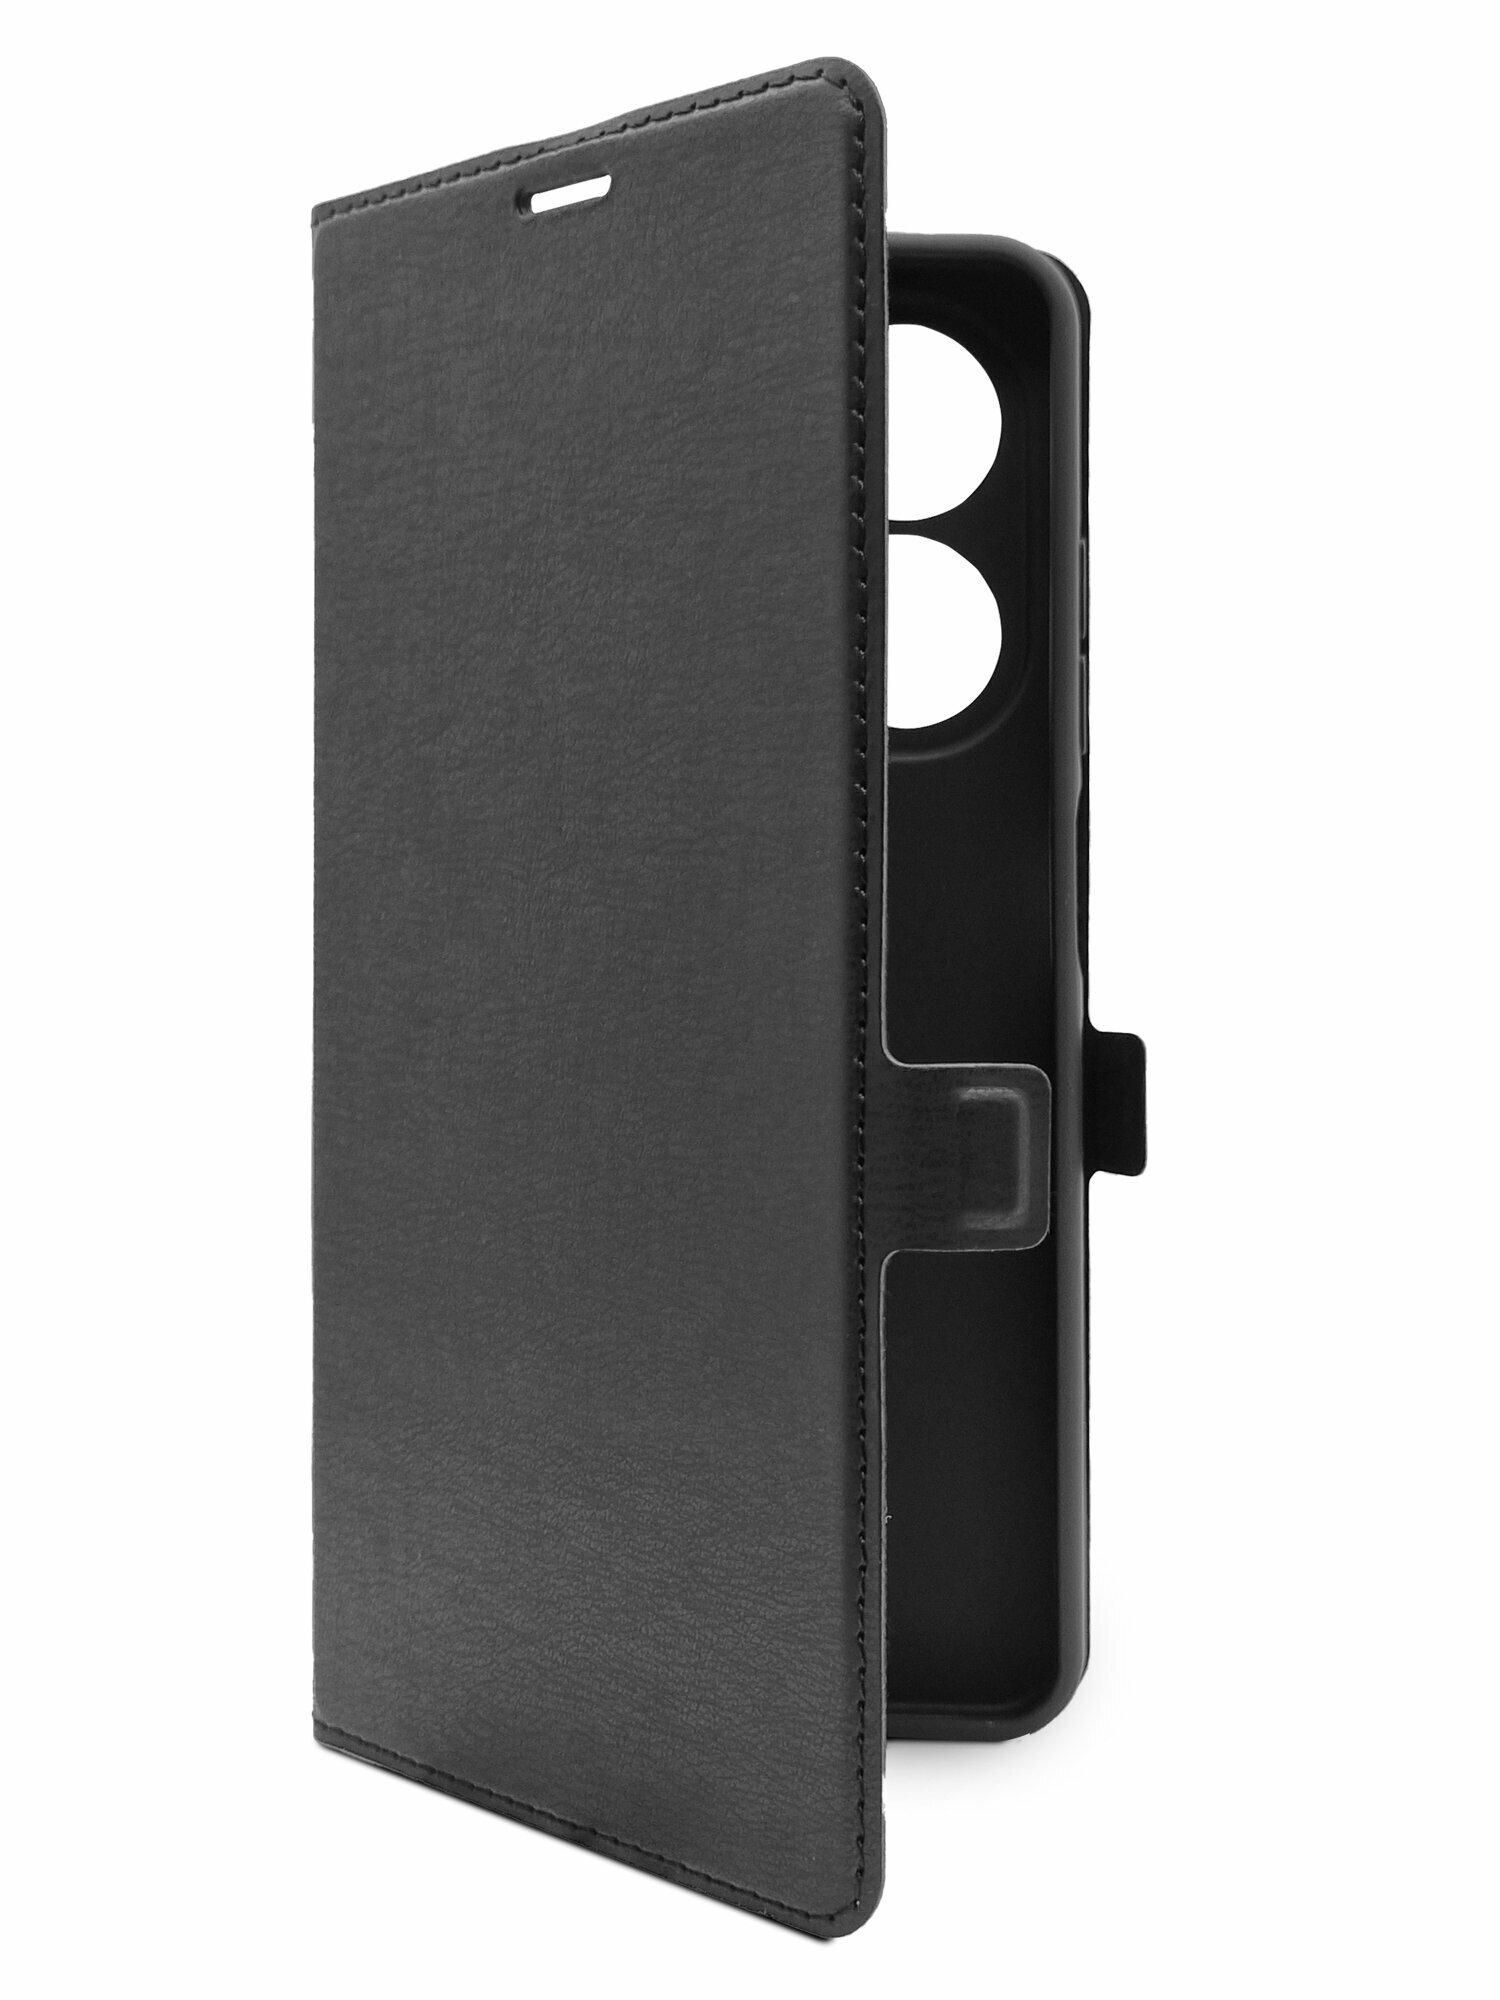 Чехол на Tecno Spark 20 (Техно Спарк 20) черный книжка эко-кожа с функцией подставки отделением для пластиковых карт и магнитами Book case, Brozo